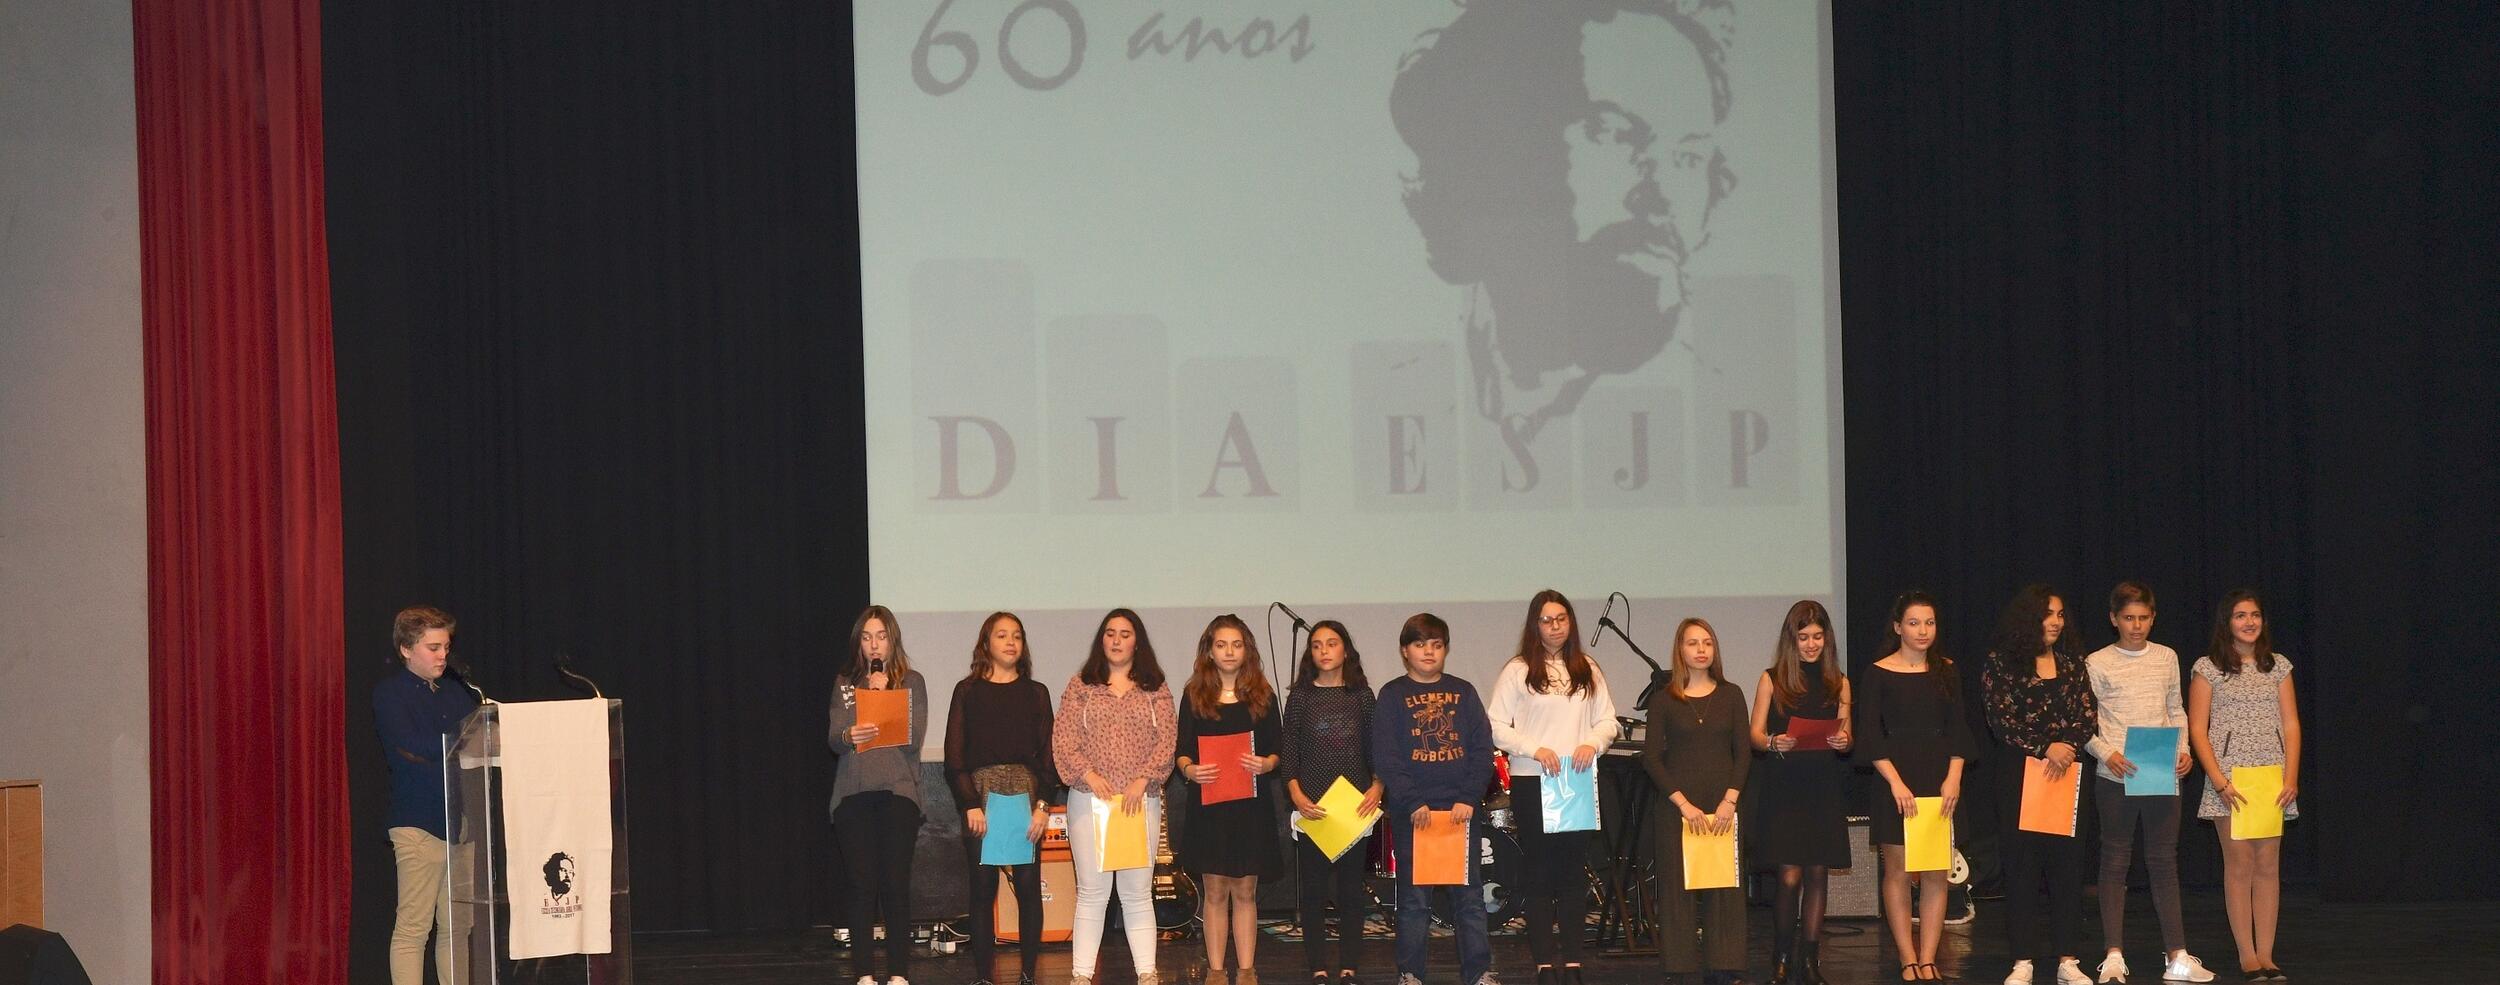 Escola Secundária Jorge Peixinho assinalou 60 anos de existência